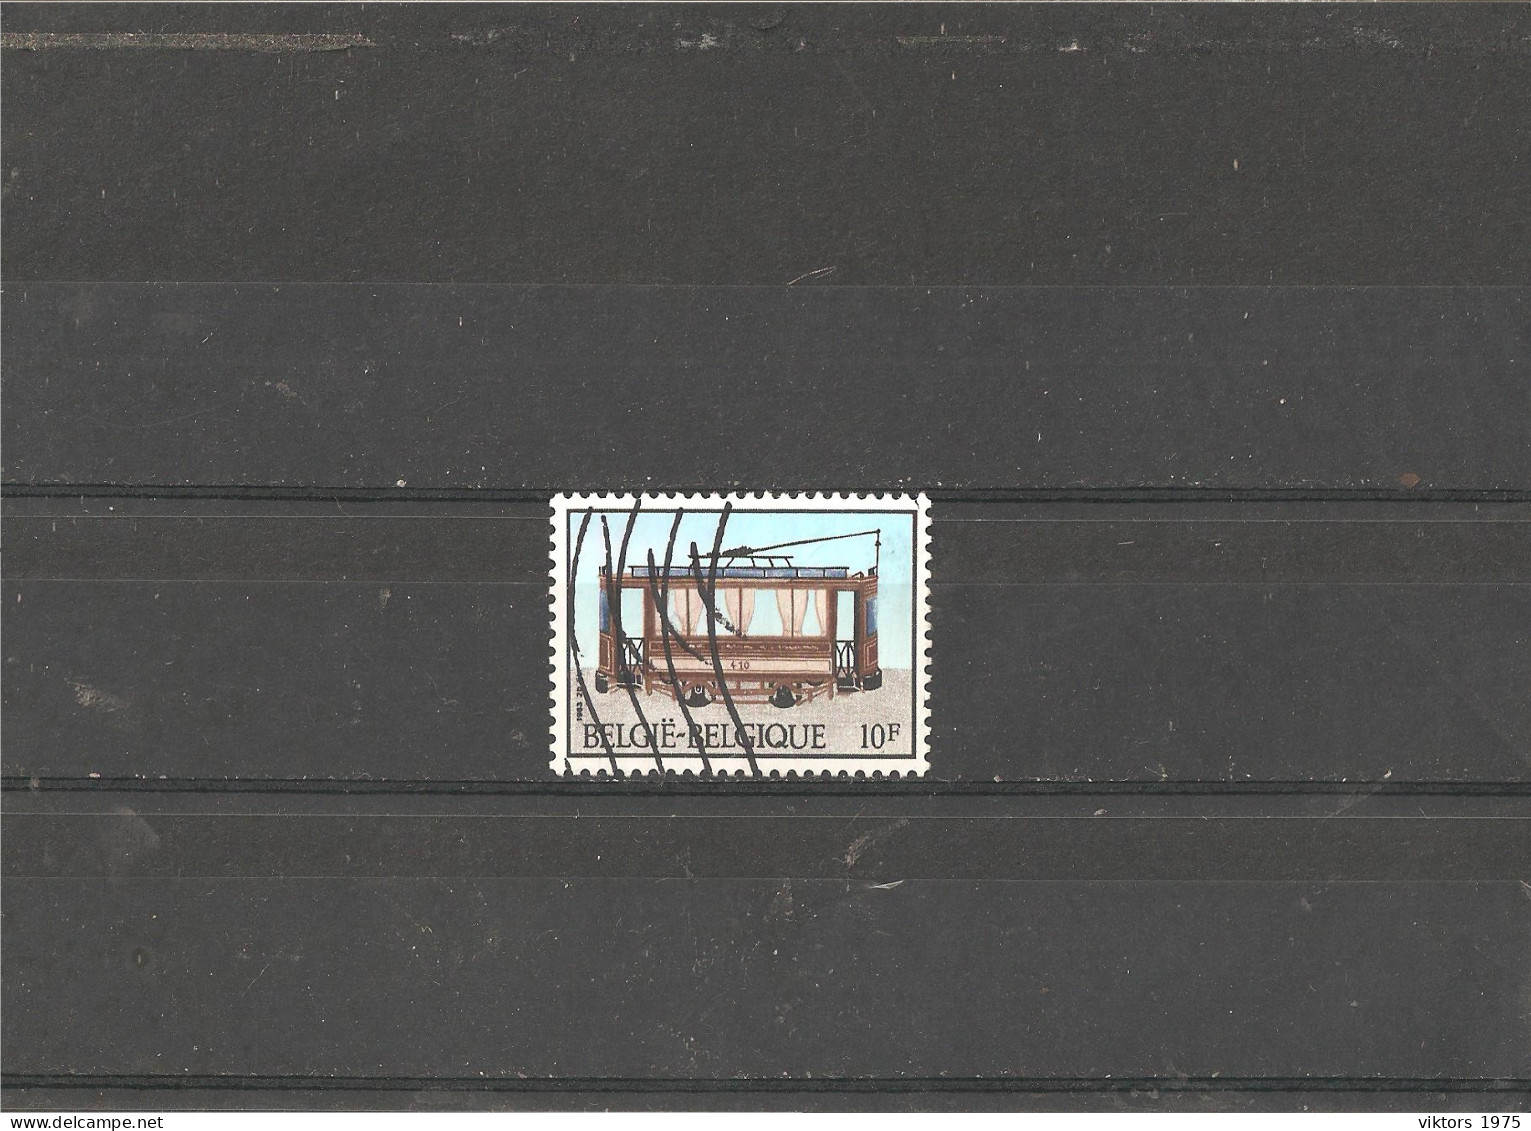 Used Stamp Nr.2132 In MICHEL Catalog - Usati